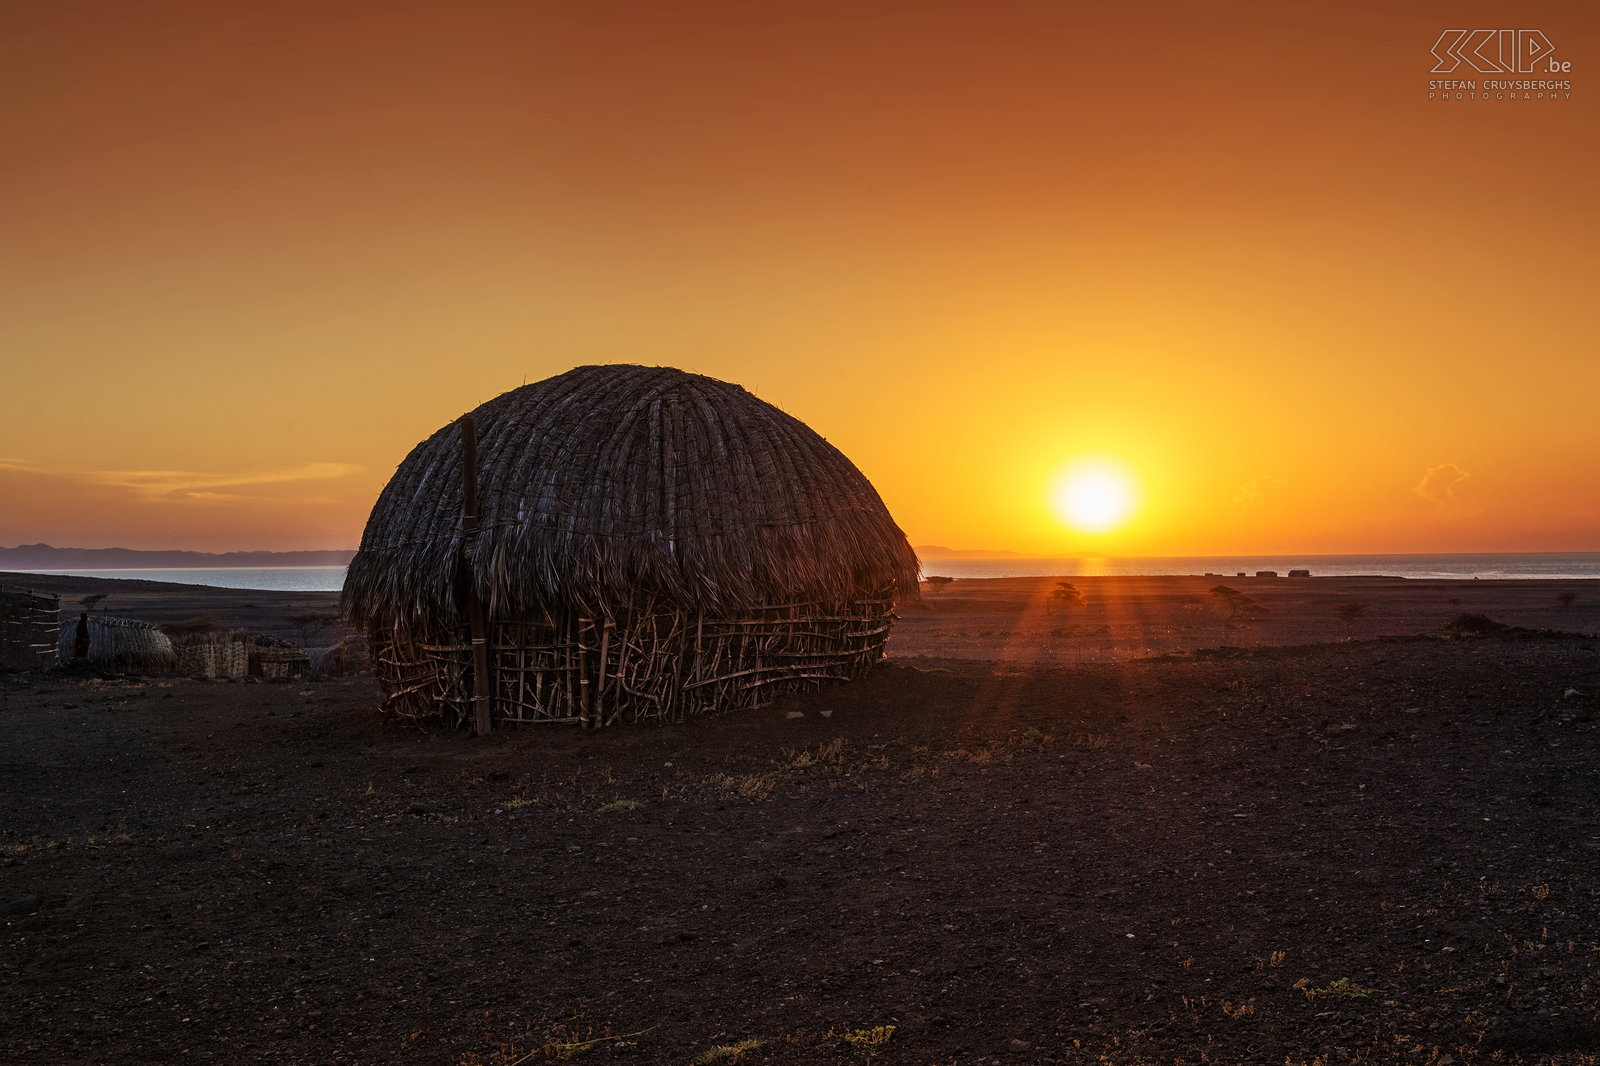 Lake Turkana - Sunset Wonderful sunset at Lake Turkana near a traditional hut of the Turkana people. Stefan Cruysberghs